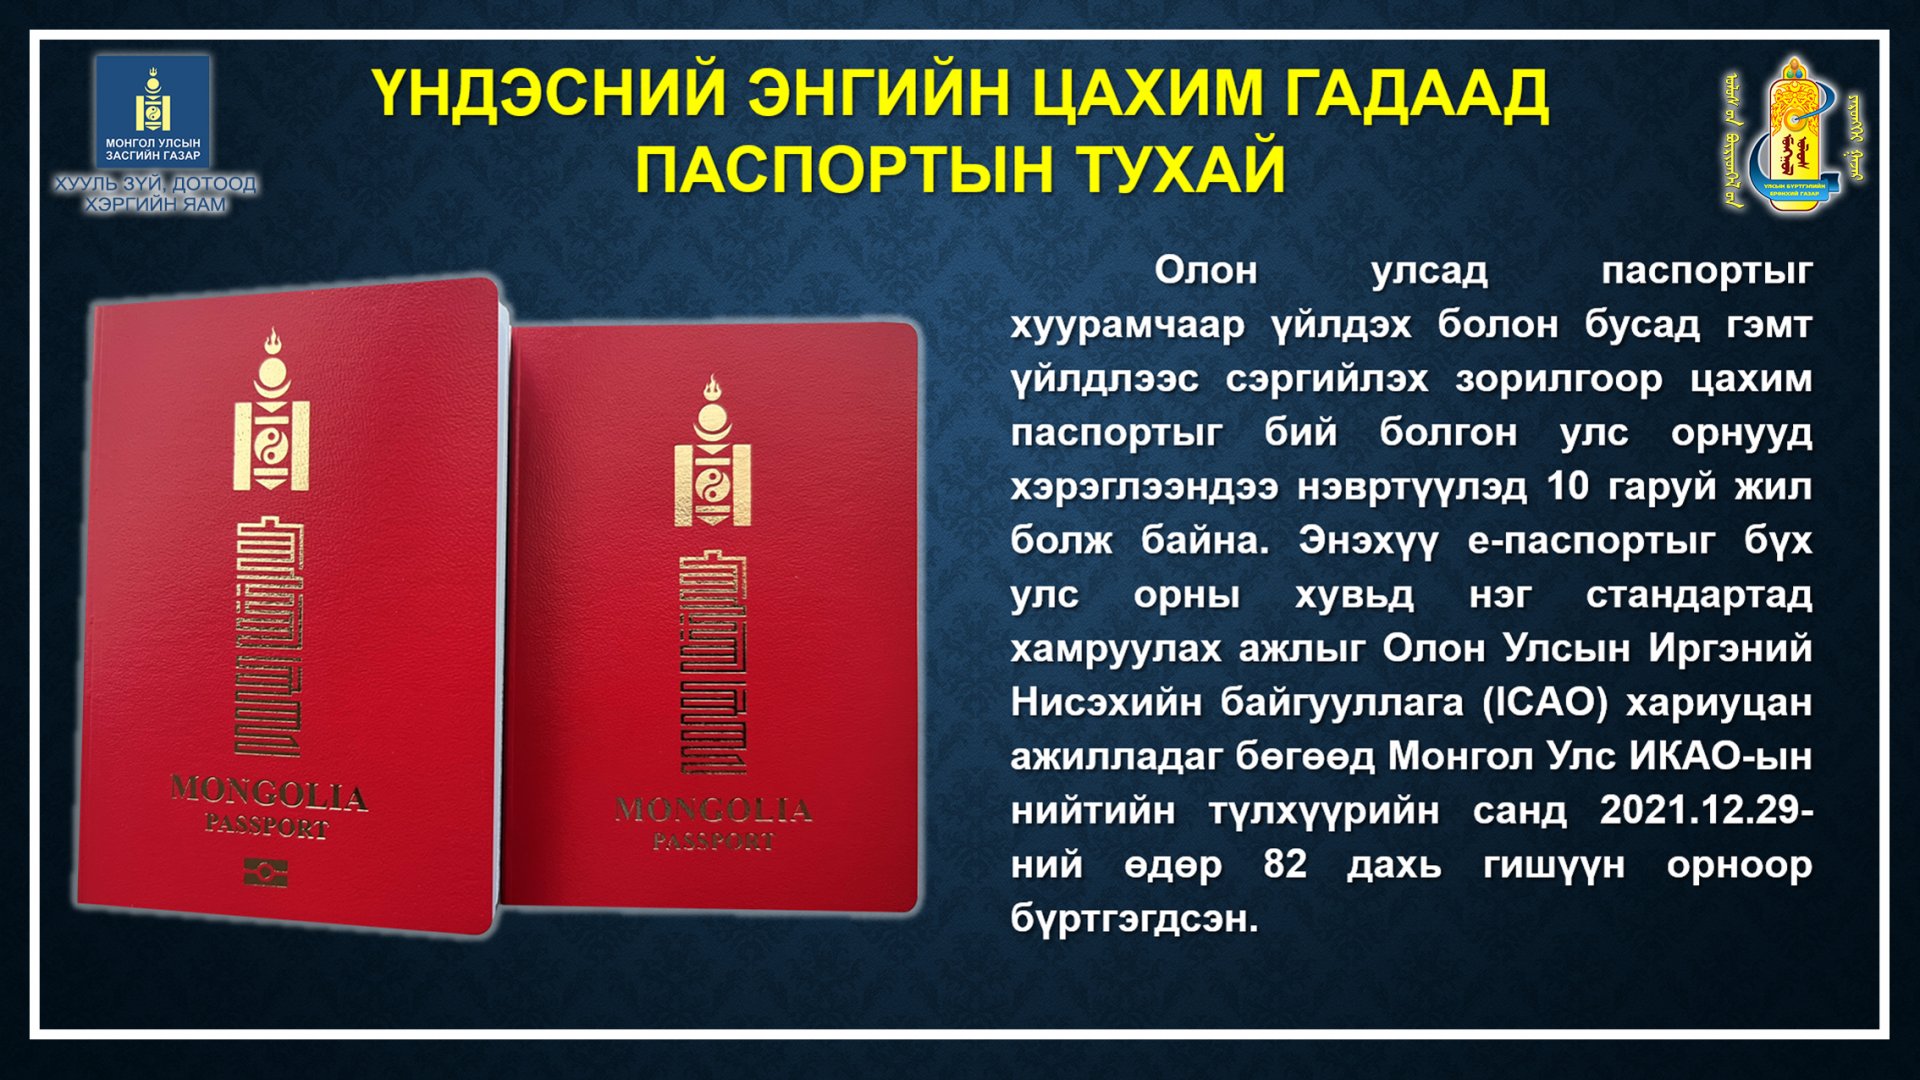 Иргэд та бүхэн ЭНГИЙН болон ЦАХИМ гэсэн 2 төрлийн гадаад паспортоос сонголтоо хийж захиална уу